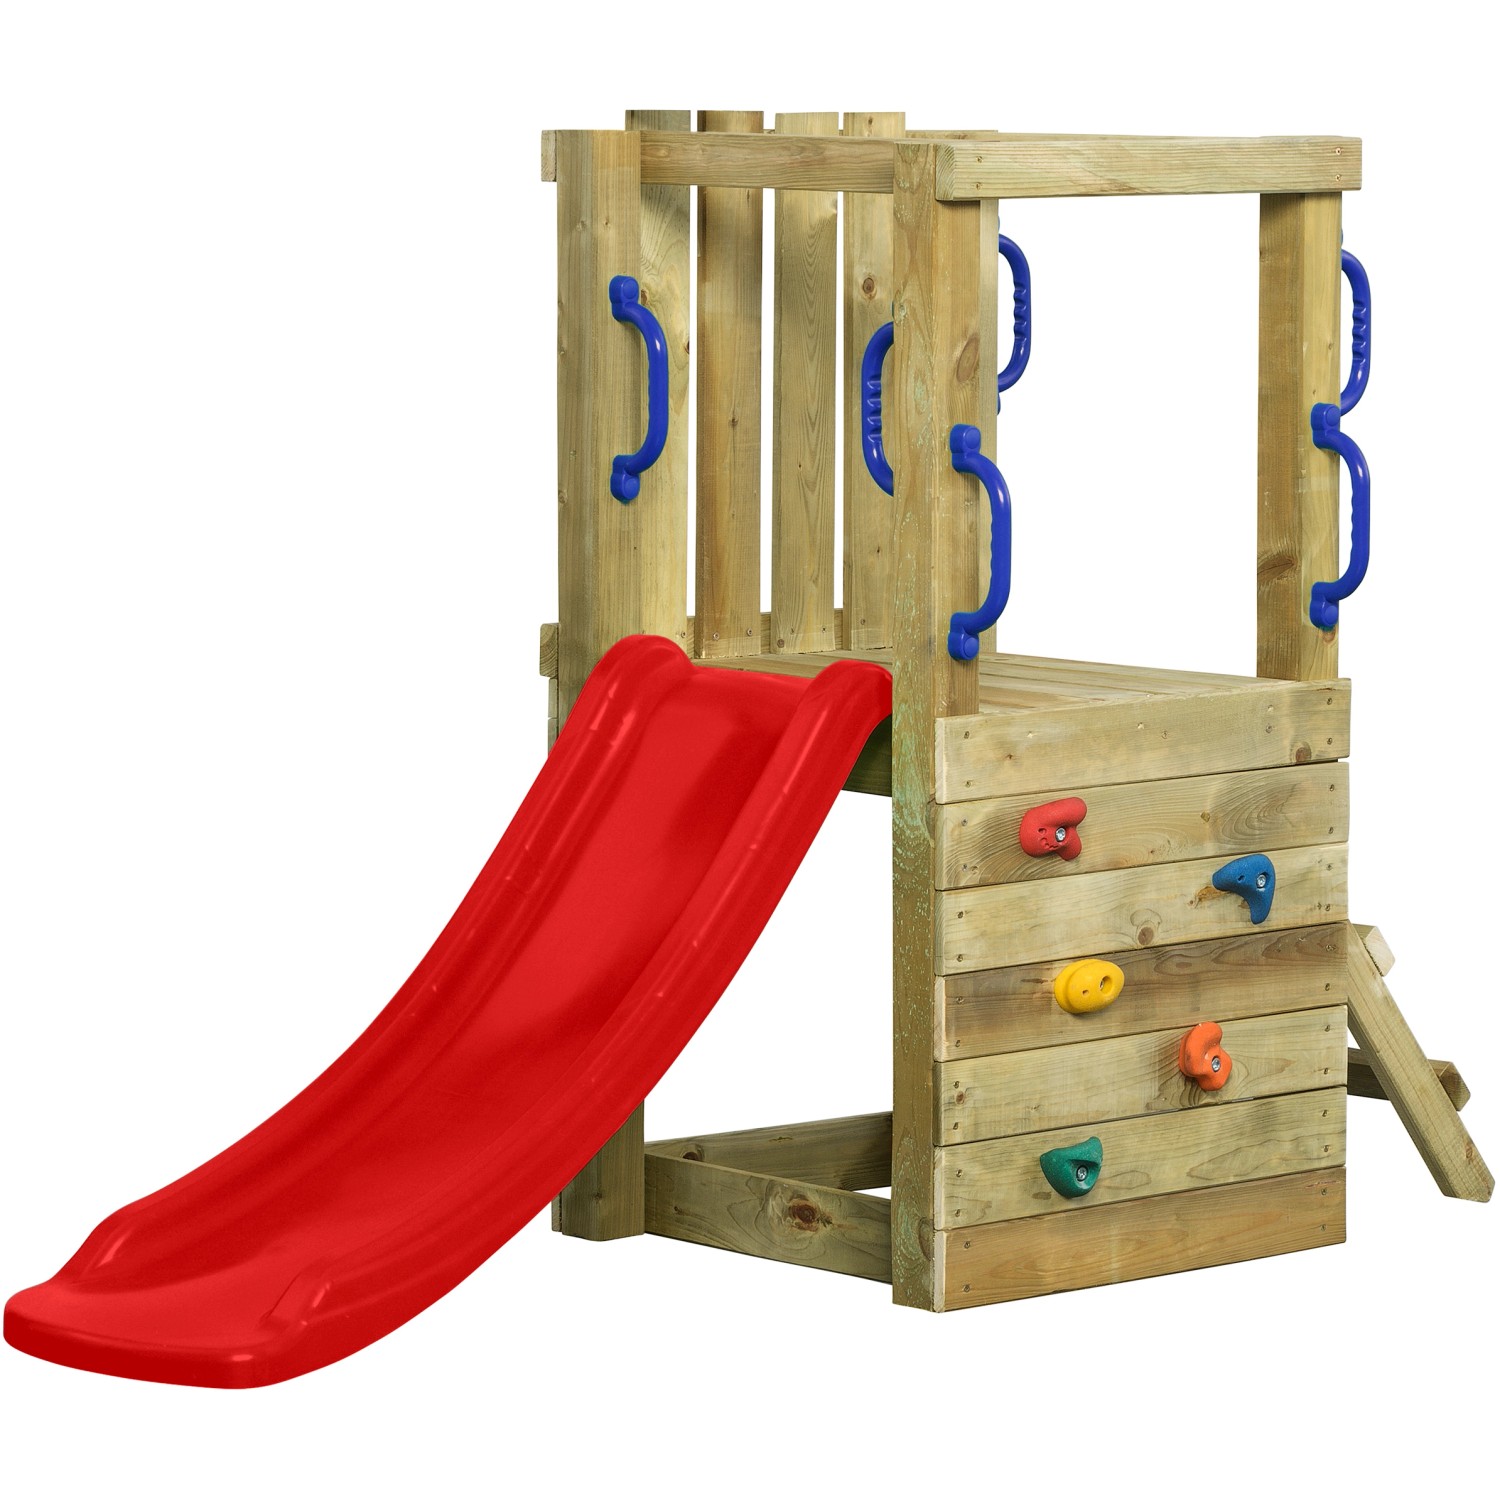 SwingKing Spielturm Irma Small mit Rutsche Rot 66 cm x 190 cm x 125 cm